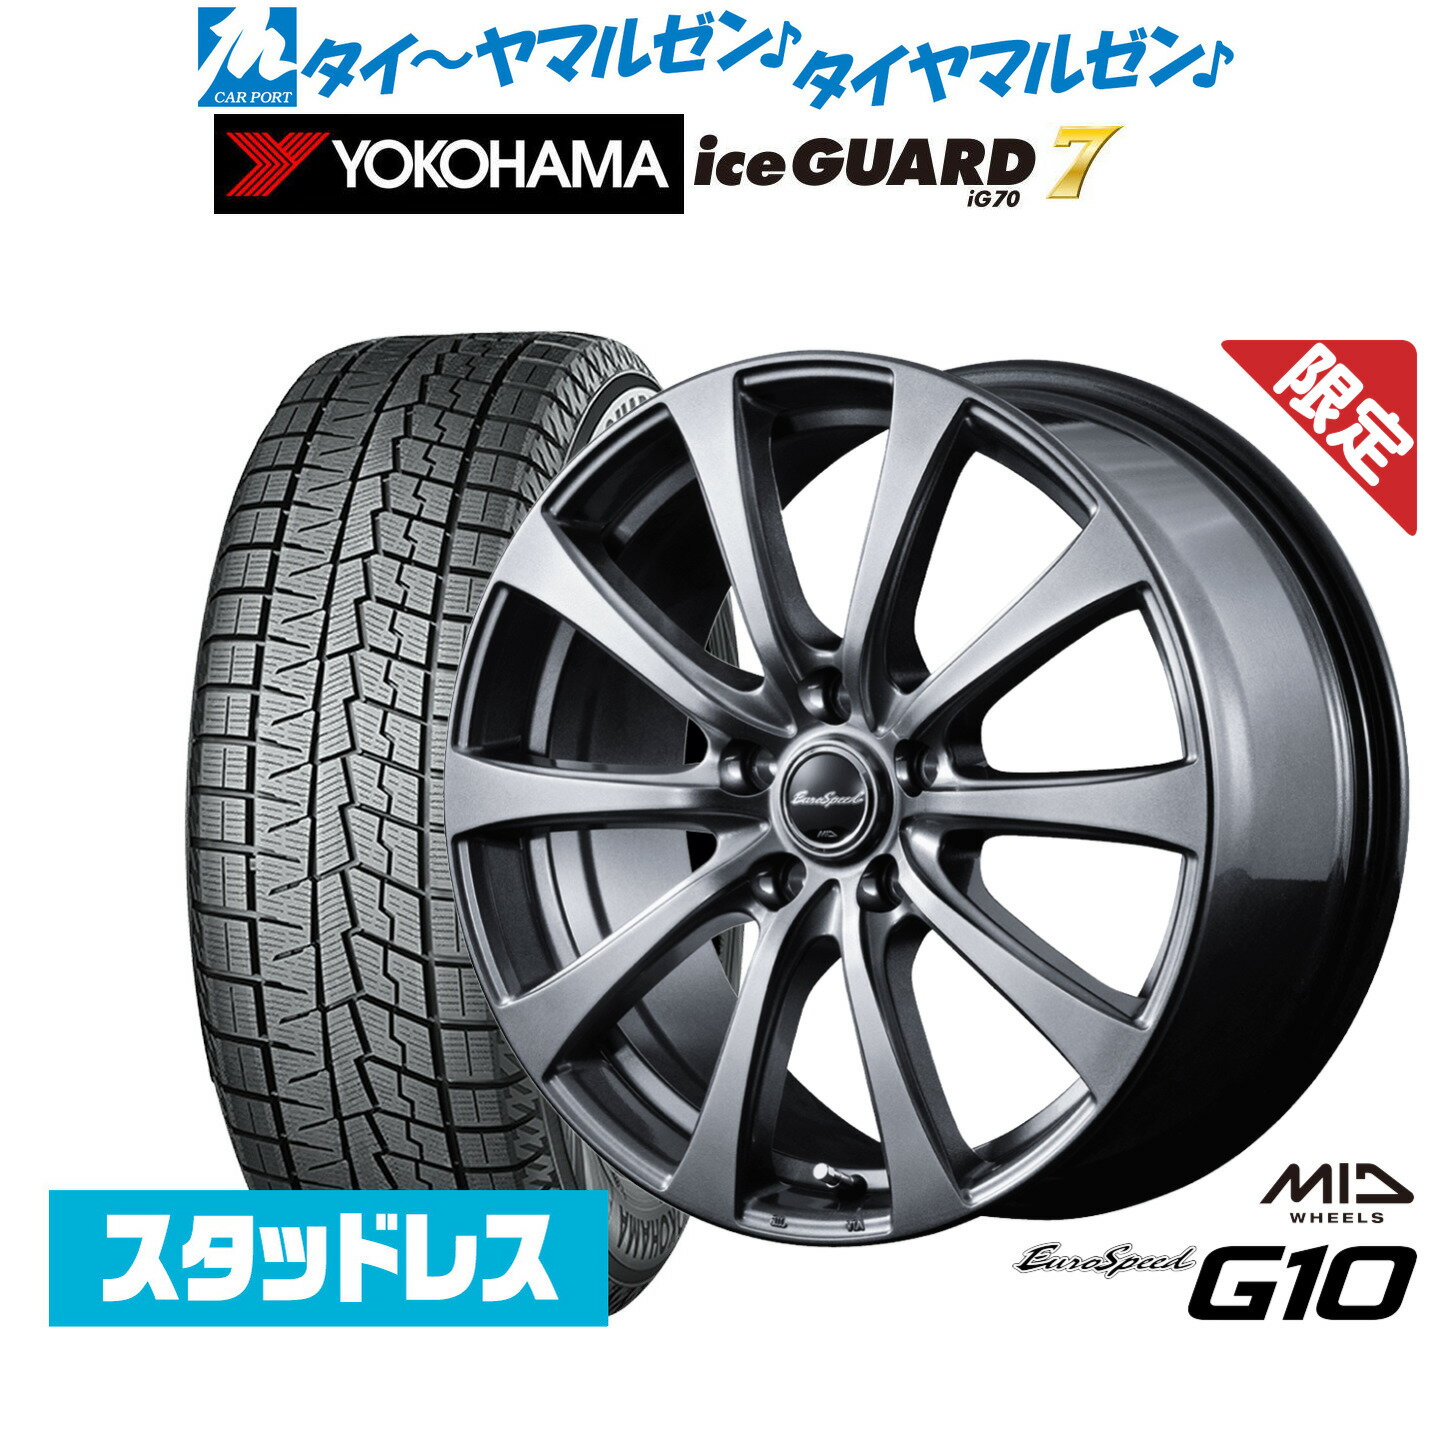 【数量限定】新品 スタッドレスタイヤ ホイール4本セットMID ユーロスピード G-1016インチ 6.5Jヨコハマ アイスガード IG70215/60R16